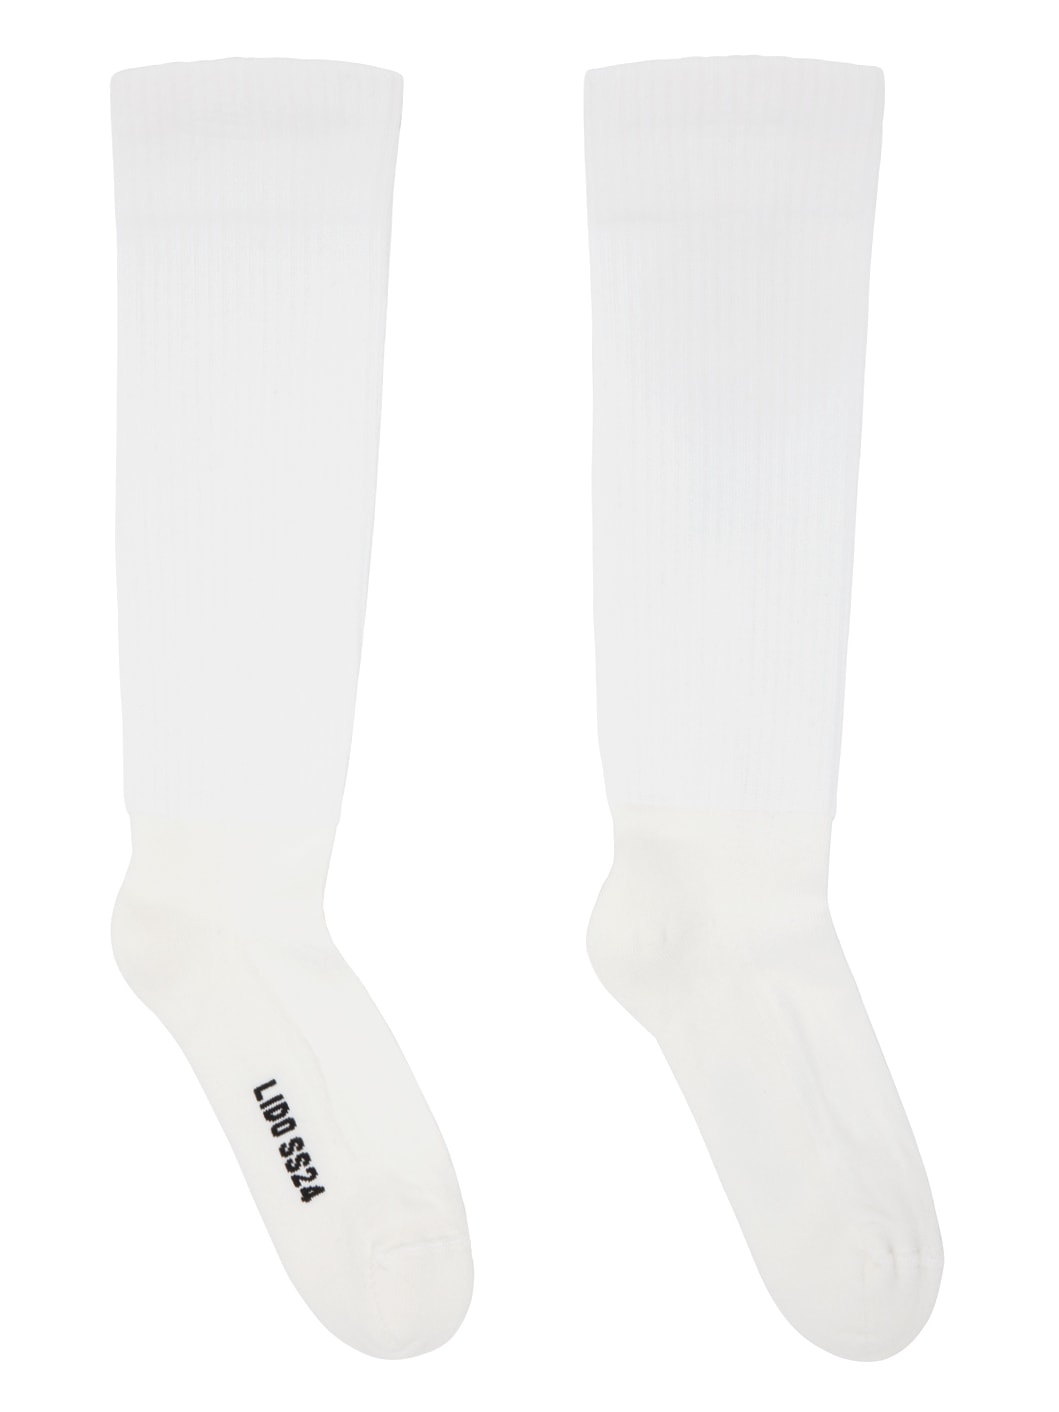 White Knee High Socks - 1